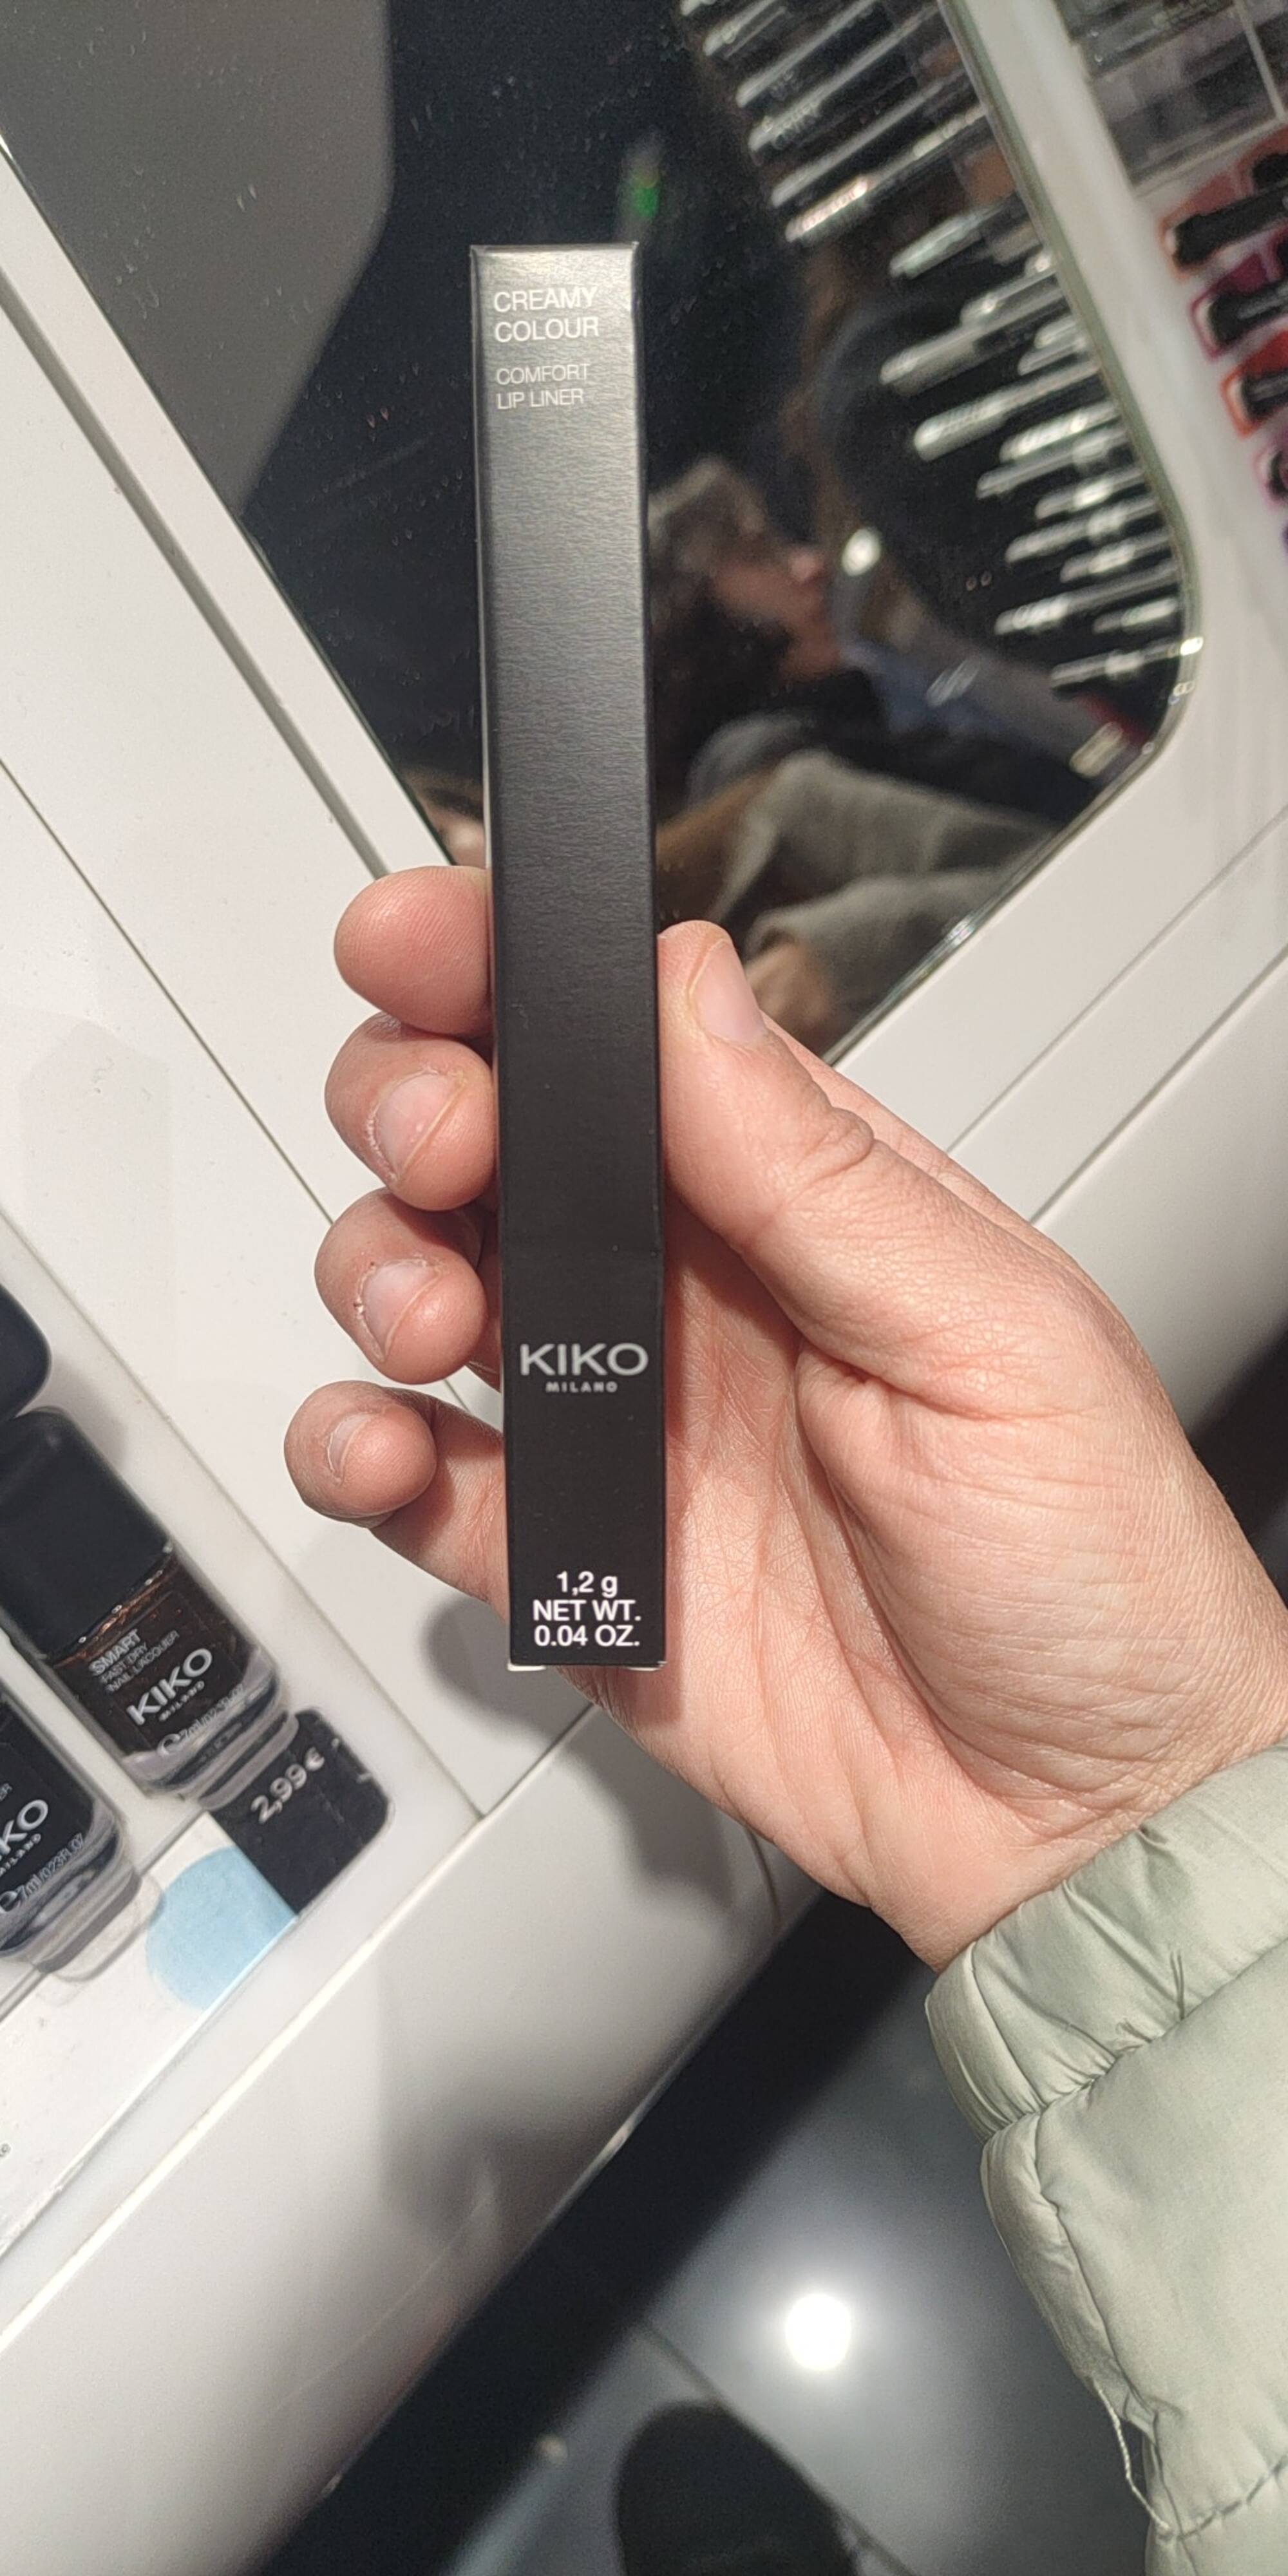 KIKO - Creamy colour - Comfort lip liner